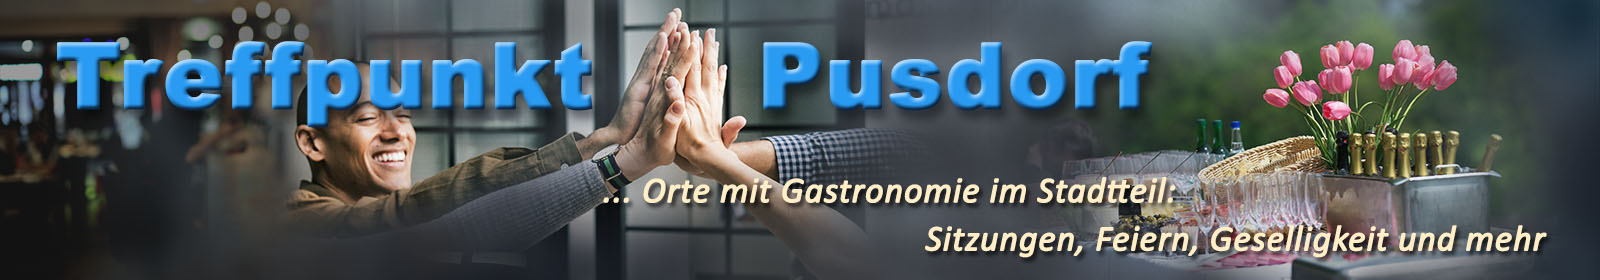 pusdorf.info – Treffpunkt Gastronomie